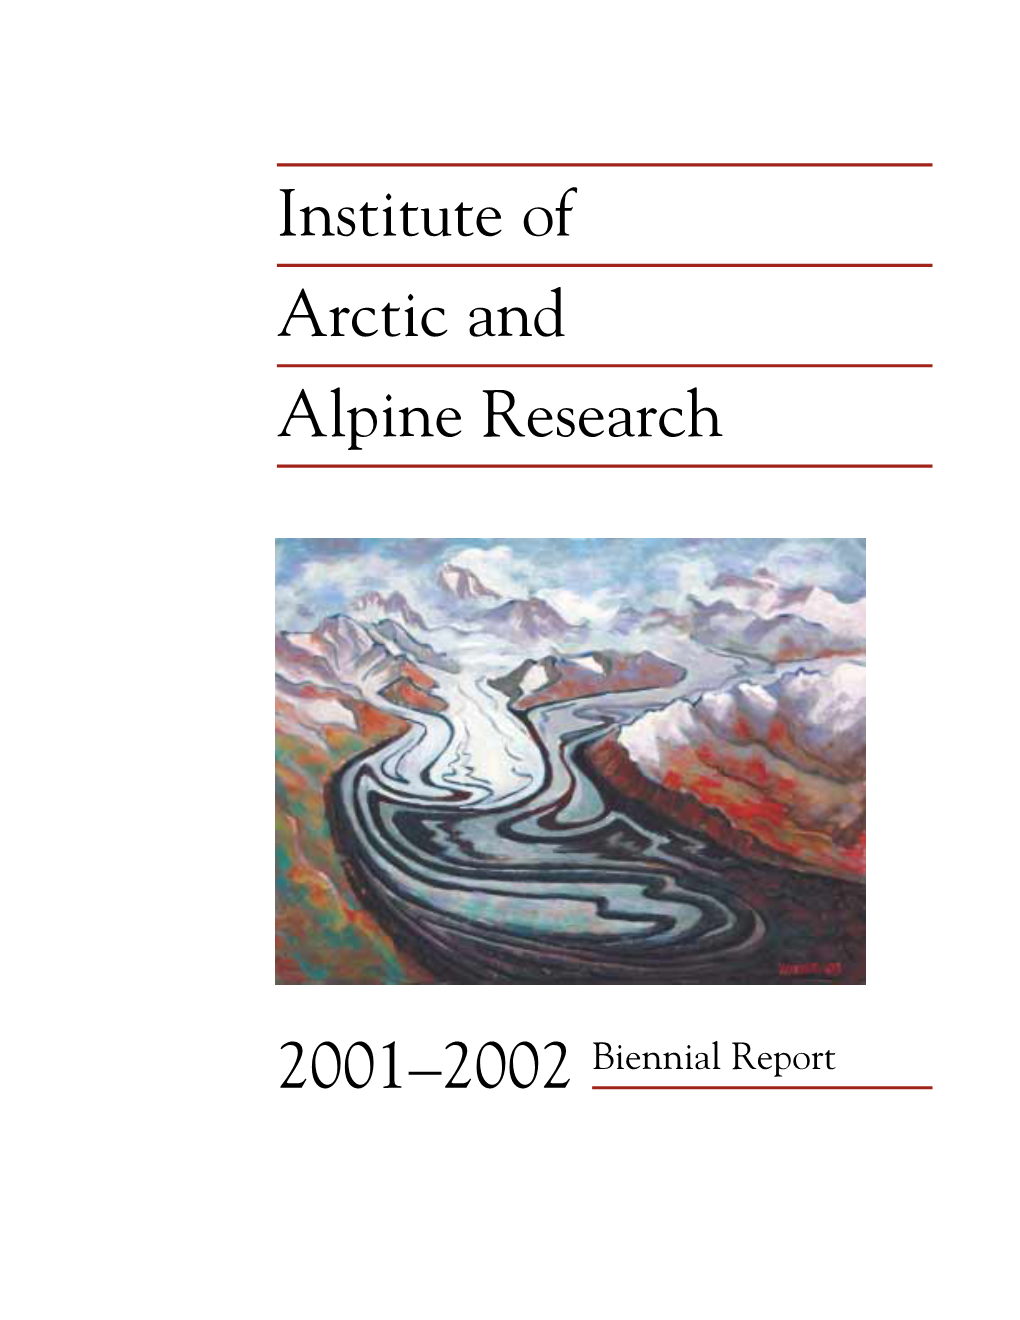 Institute of Arctic and Alpine Research